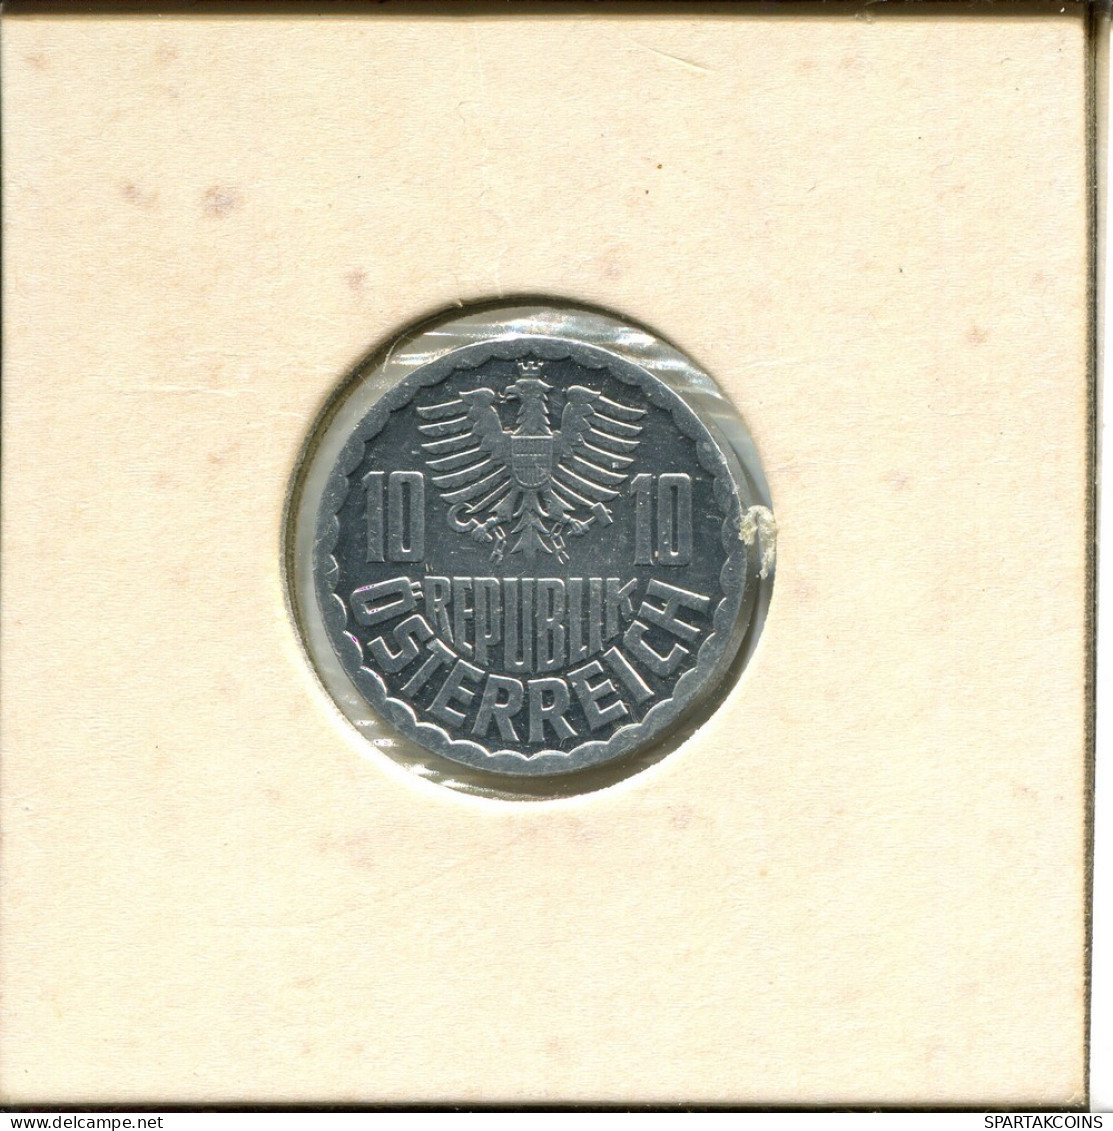 10 GROSCHEN 1980 ÖSTERREICH AUSTRIA Münze #AT560.D.A - Autriche